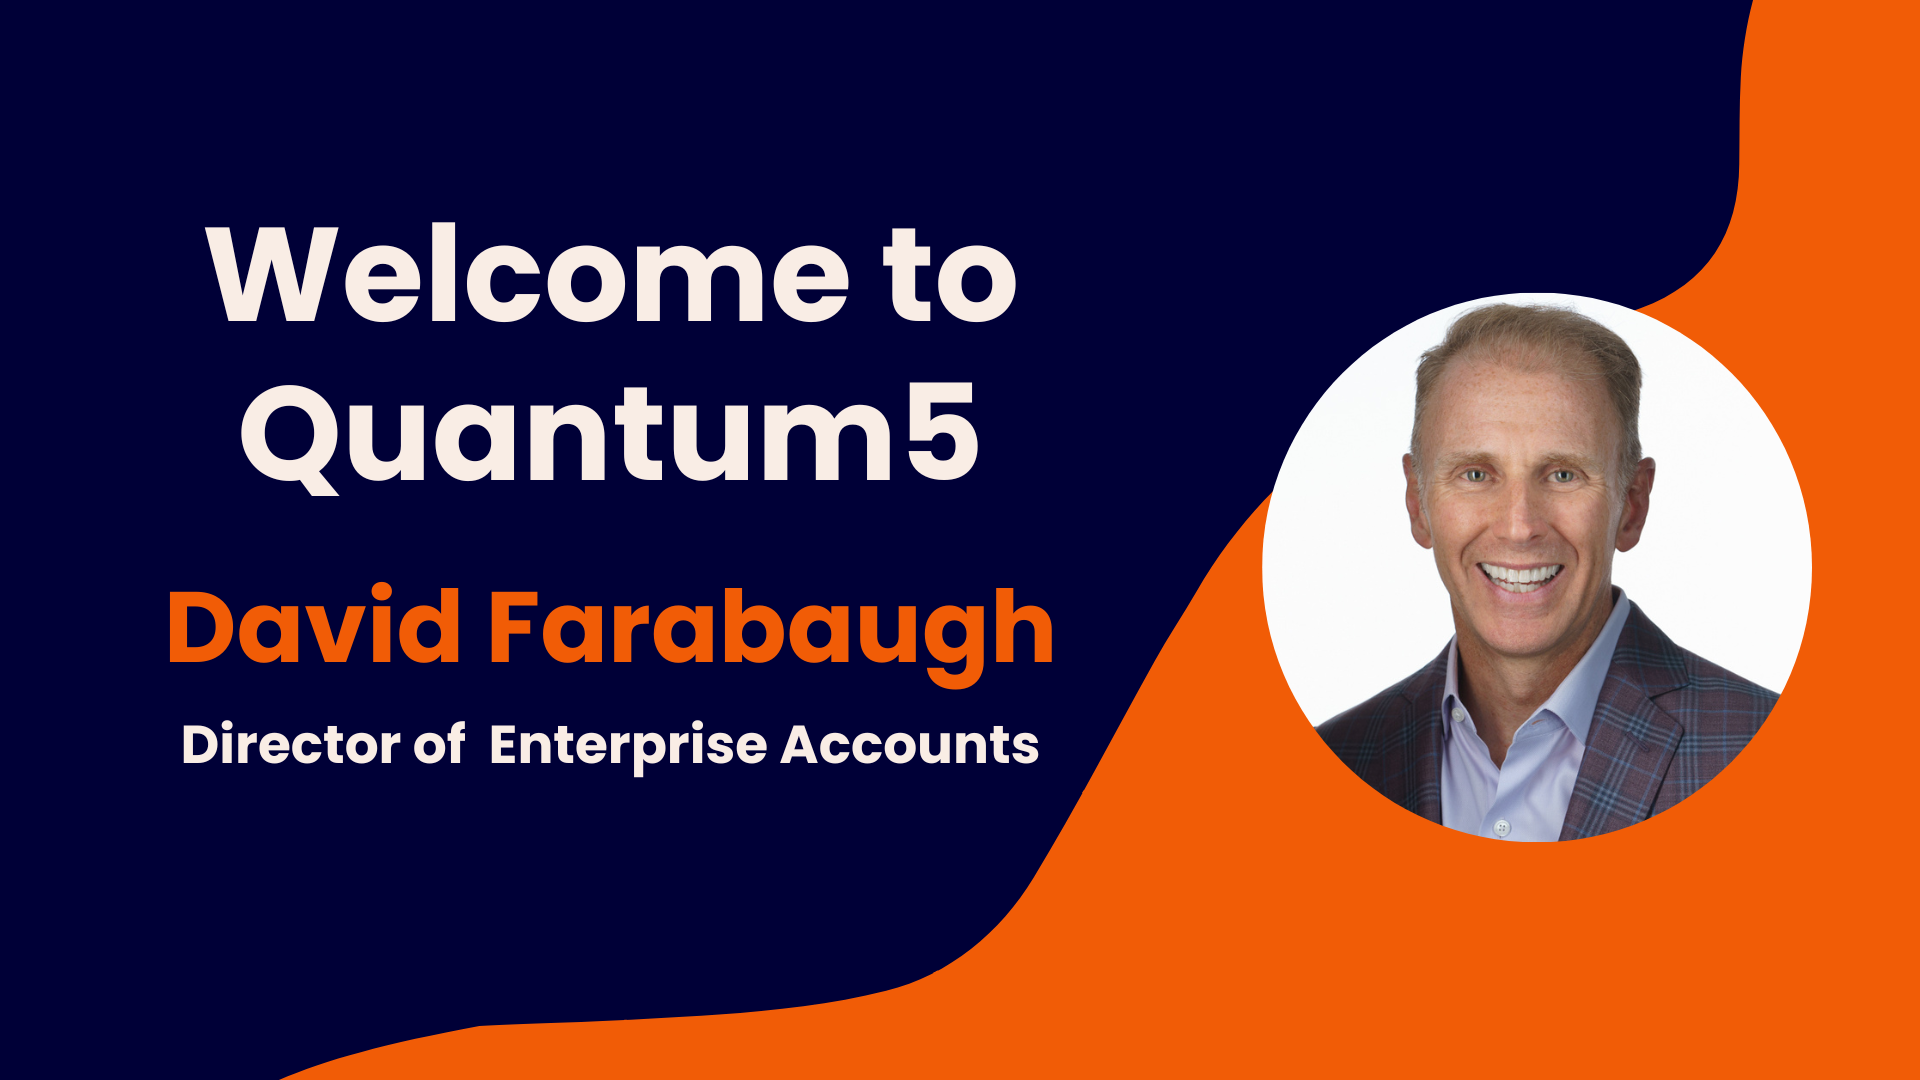 Welcome David Farabaugh